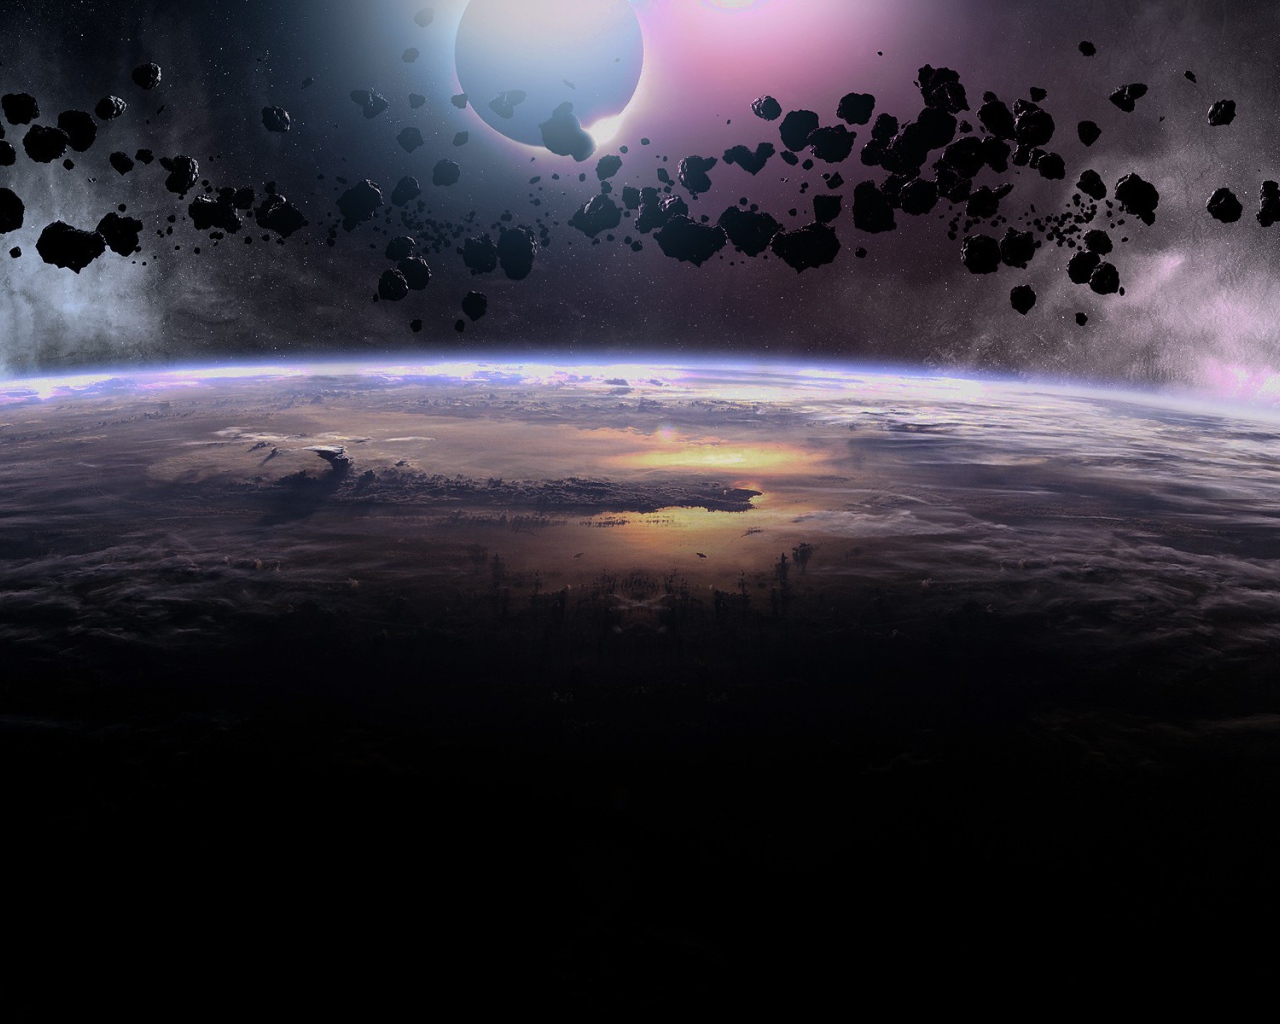 Облако черных астероидов над планетой